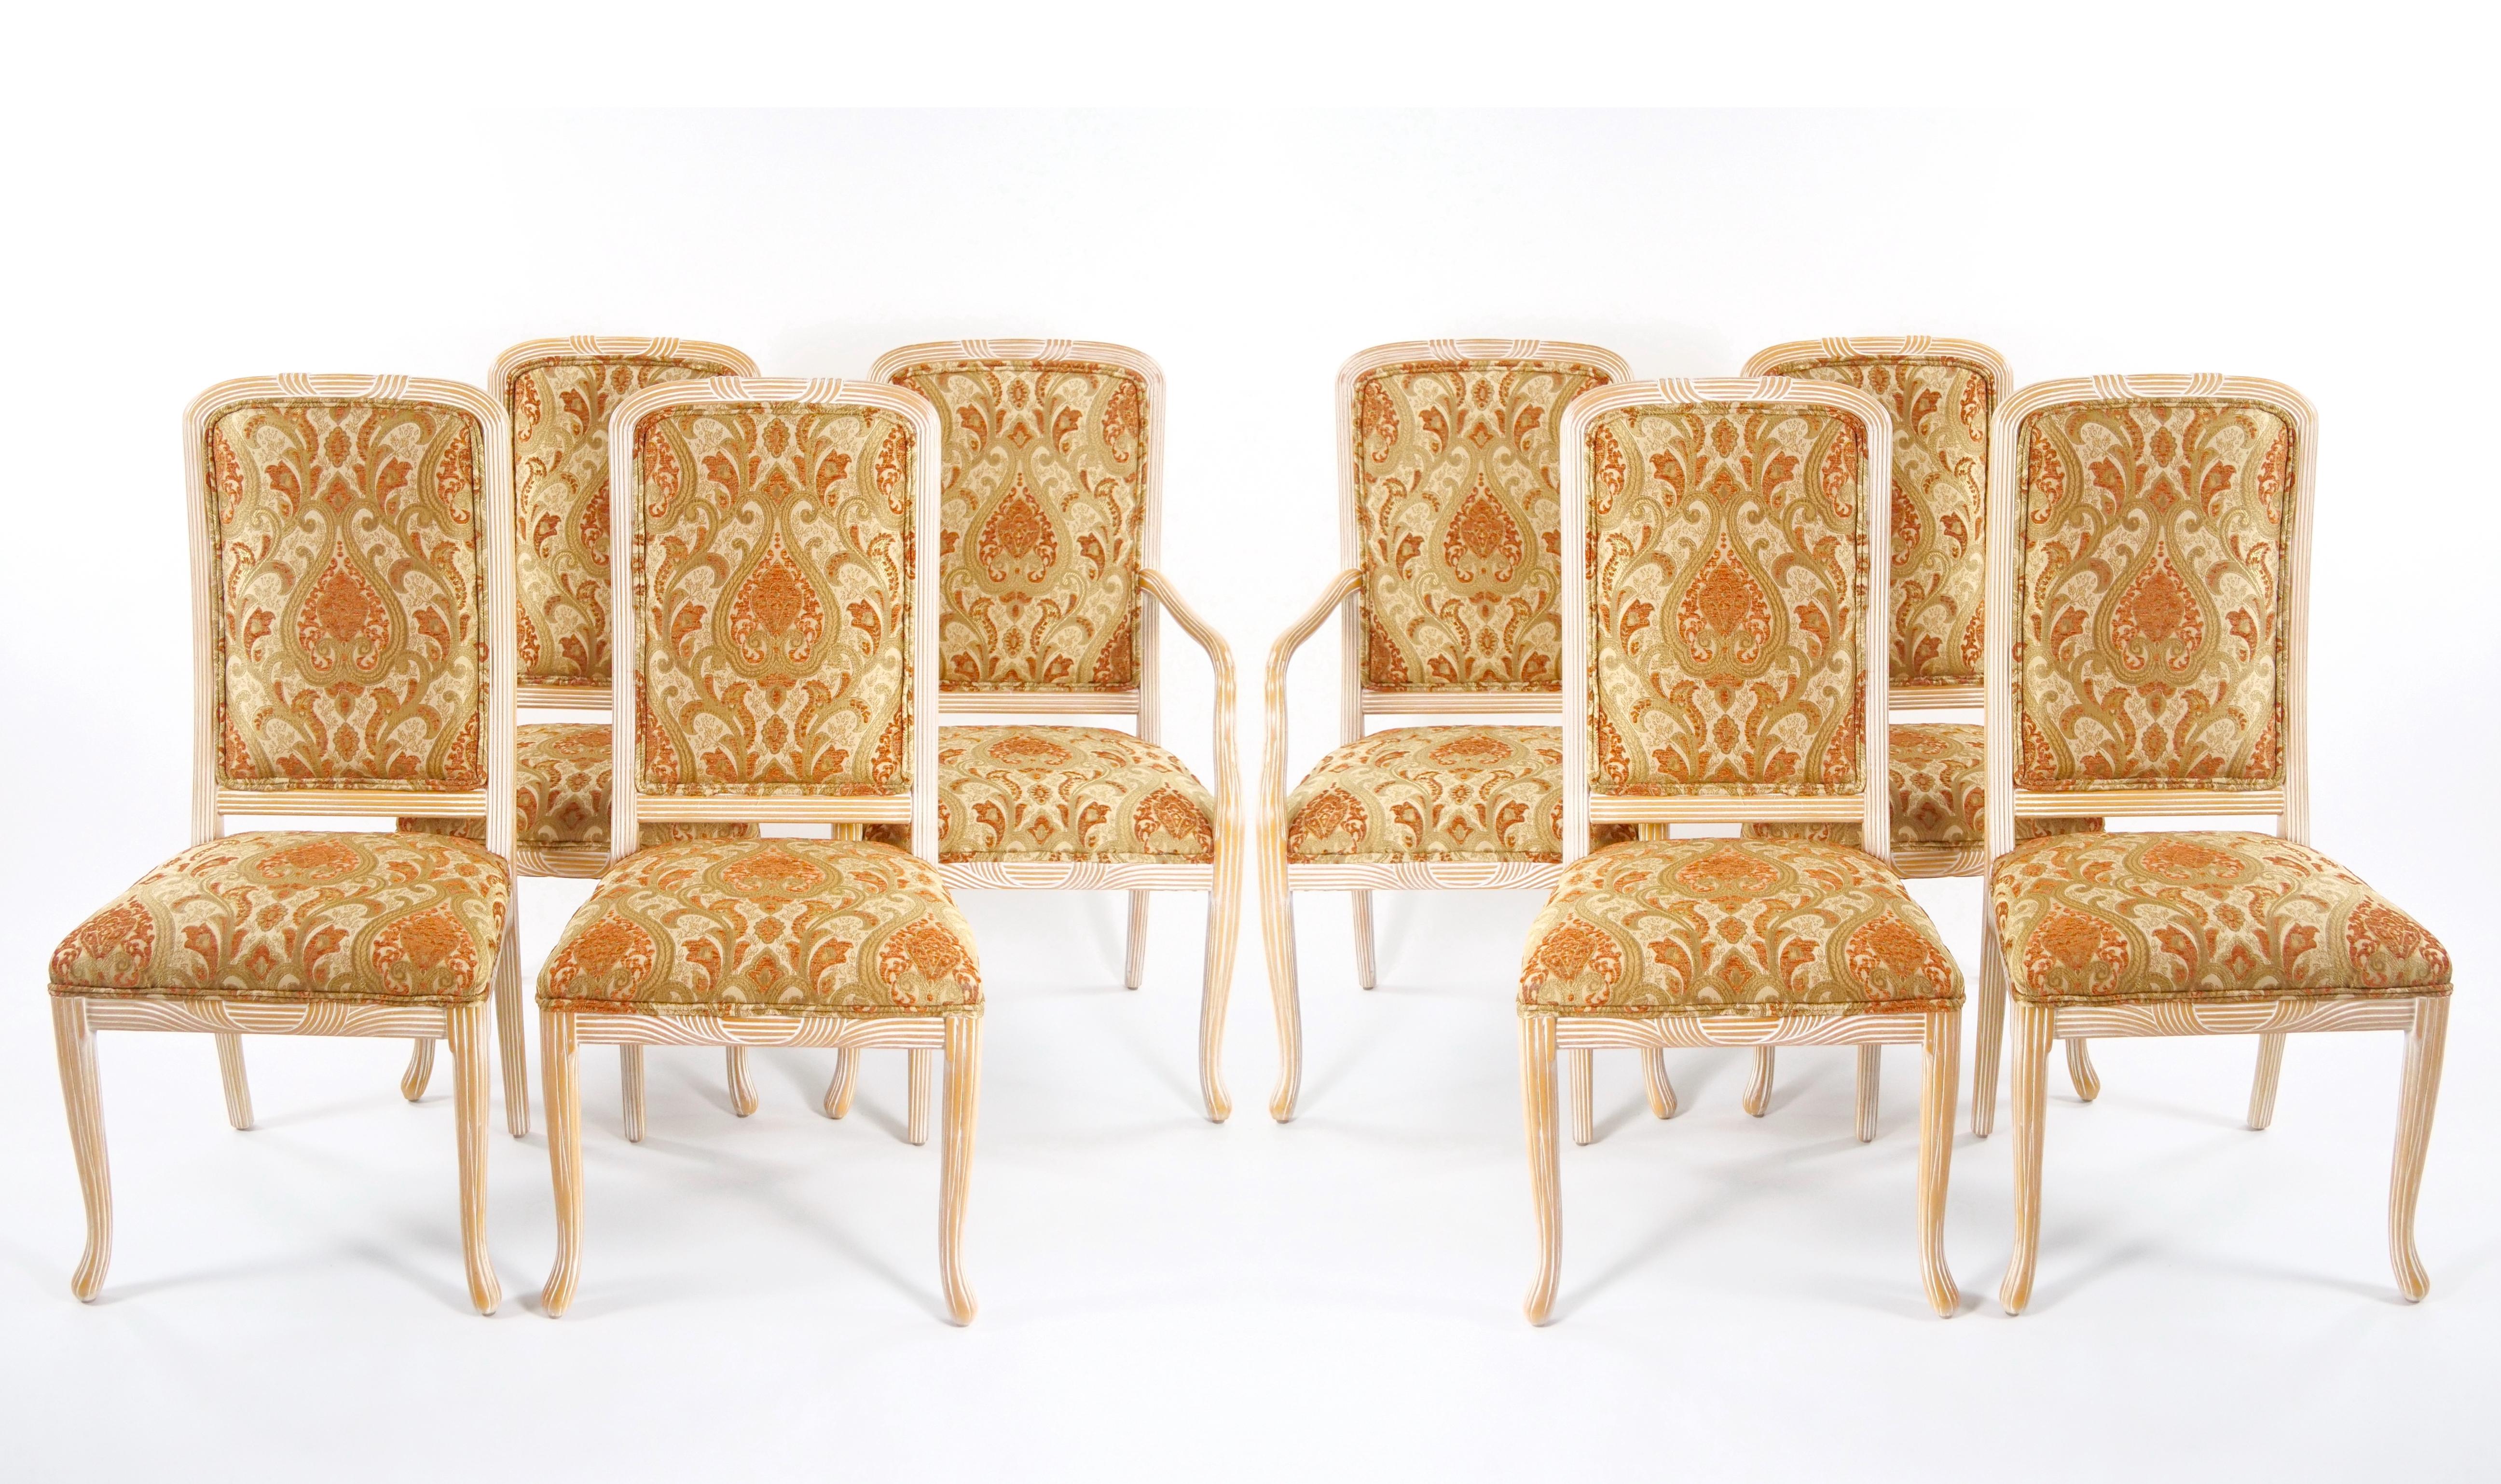 Transformez votre salle à manger en chef-d'œuvre avec notre superbe ensemble de chaises de salle à manger italiennes du milieu du 20e siècle peintes à la main et sculptées, fabriquées de manière experte pour accueillir 8 personnes exigeantes. Chaque